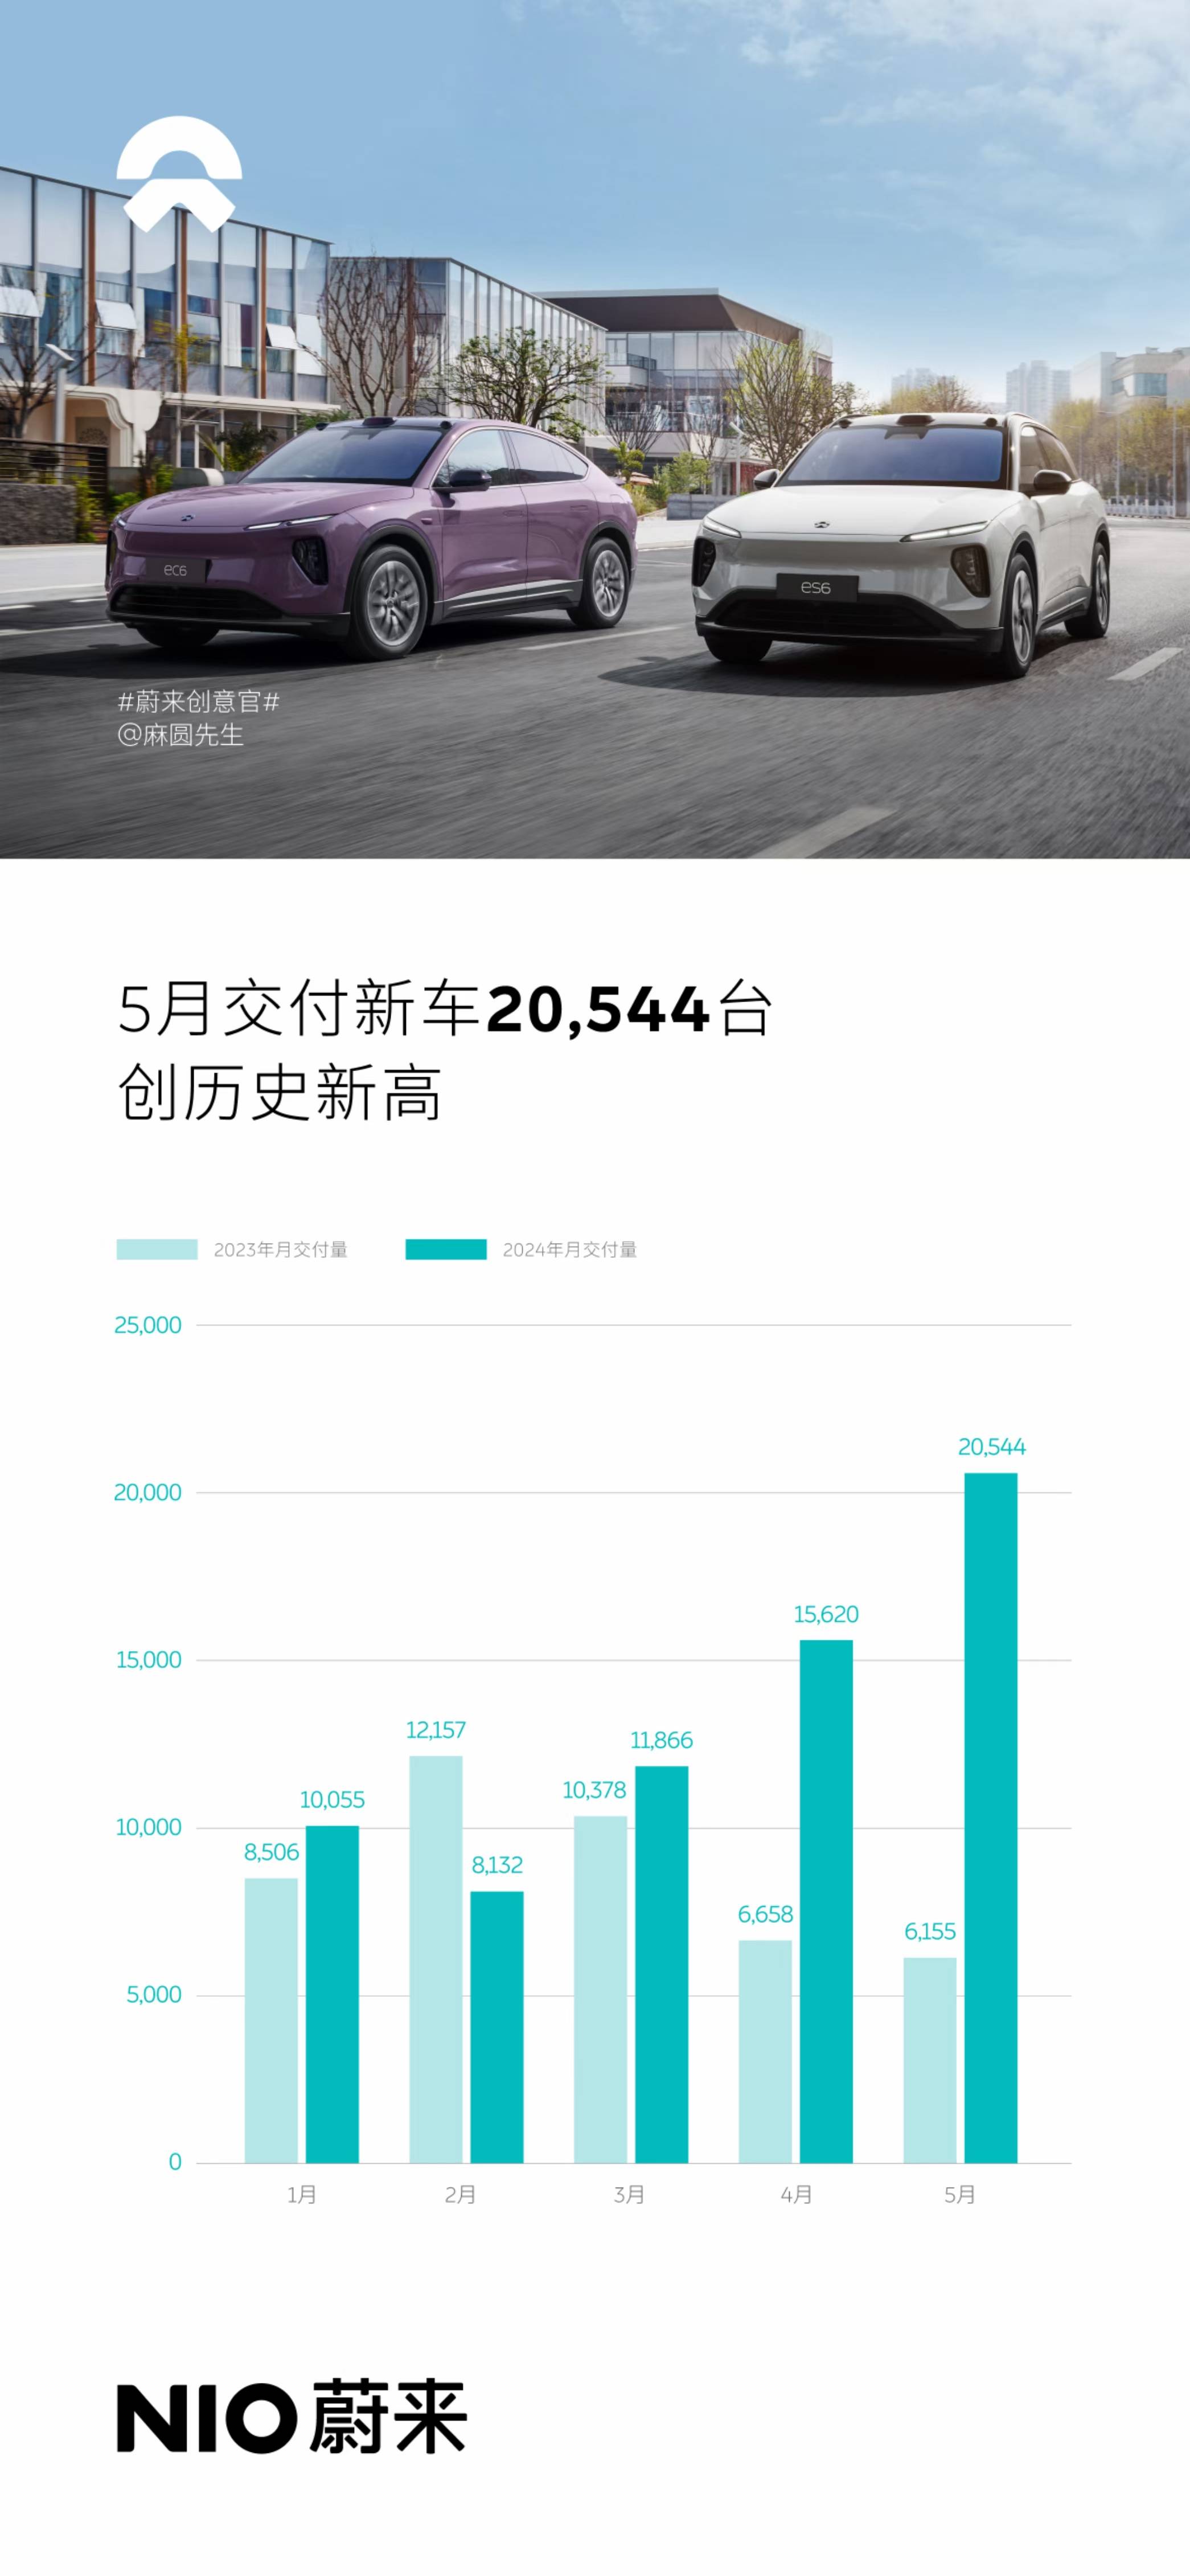 蔚来5月交付新车20544辆 同比增长233.8% 搜狐汽车全球快讯